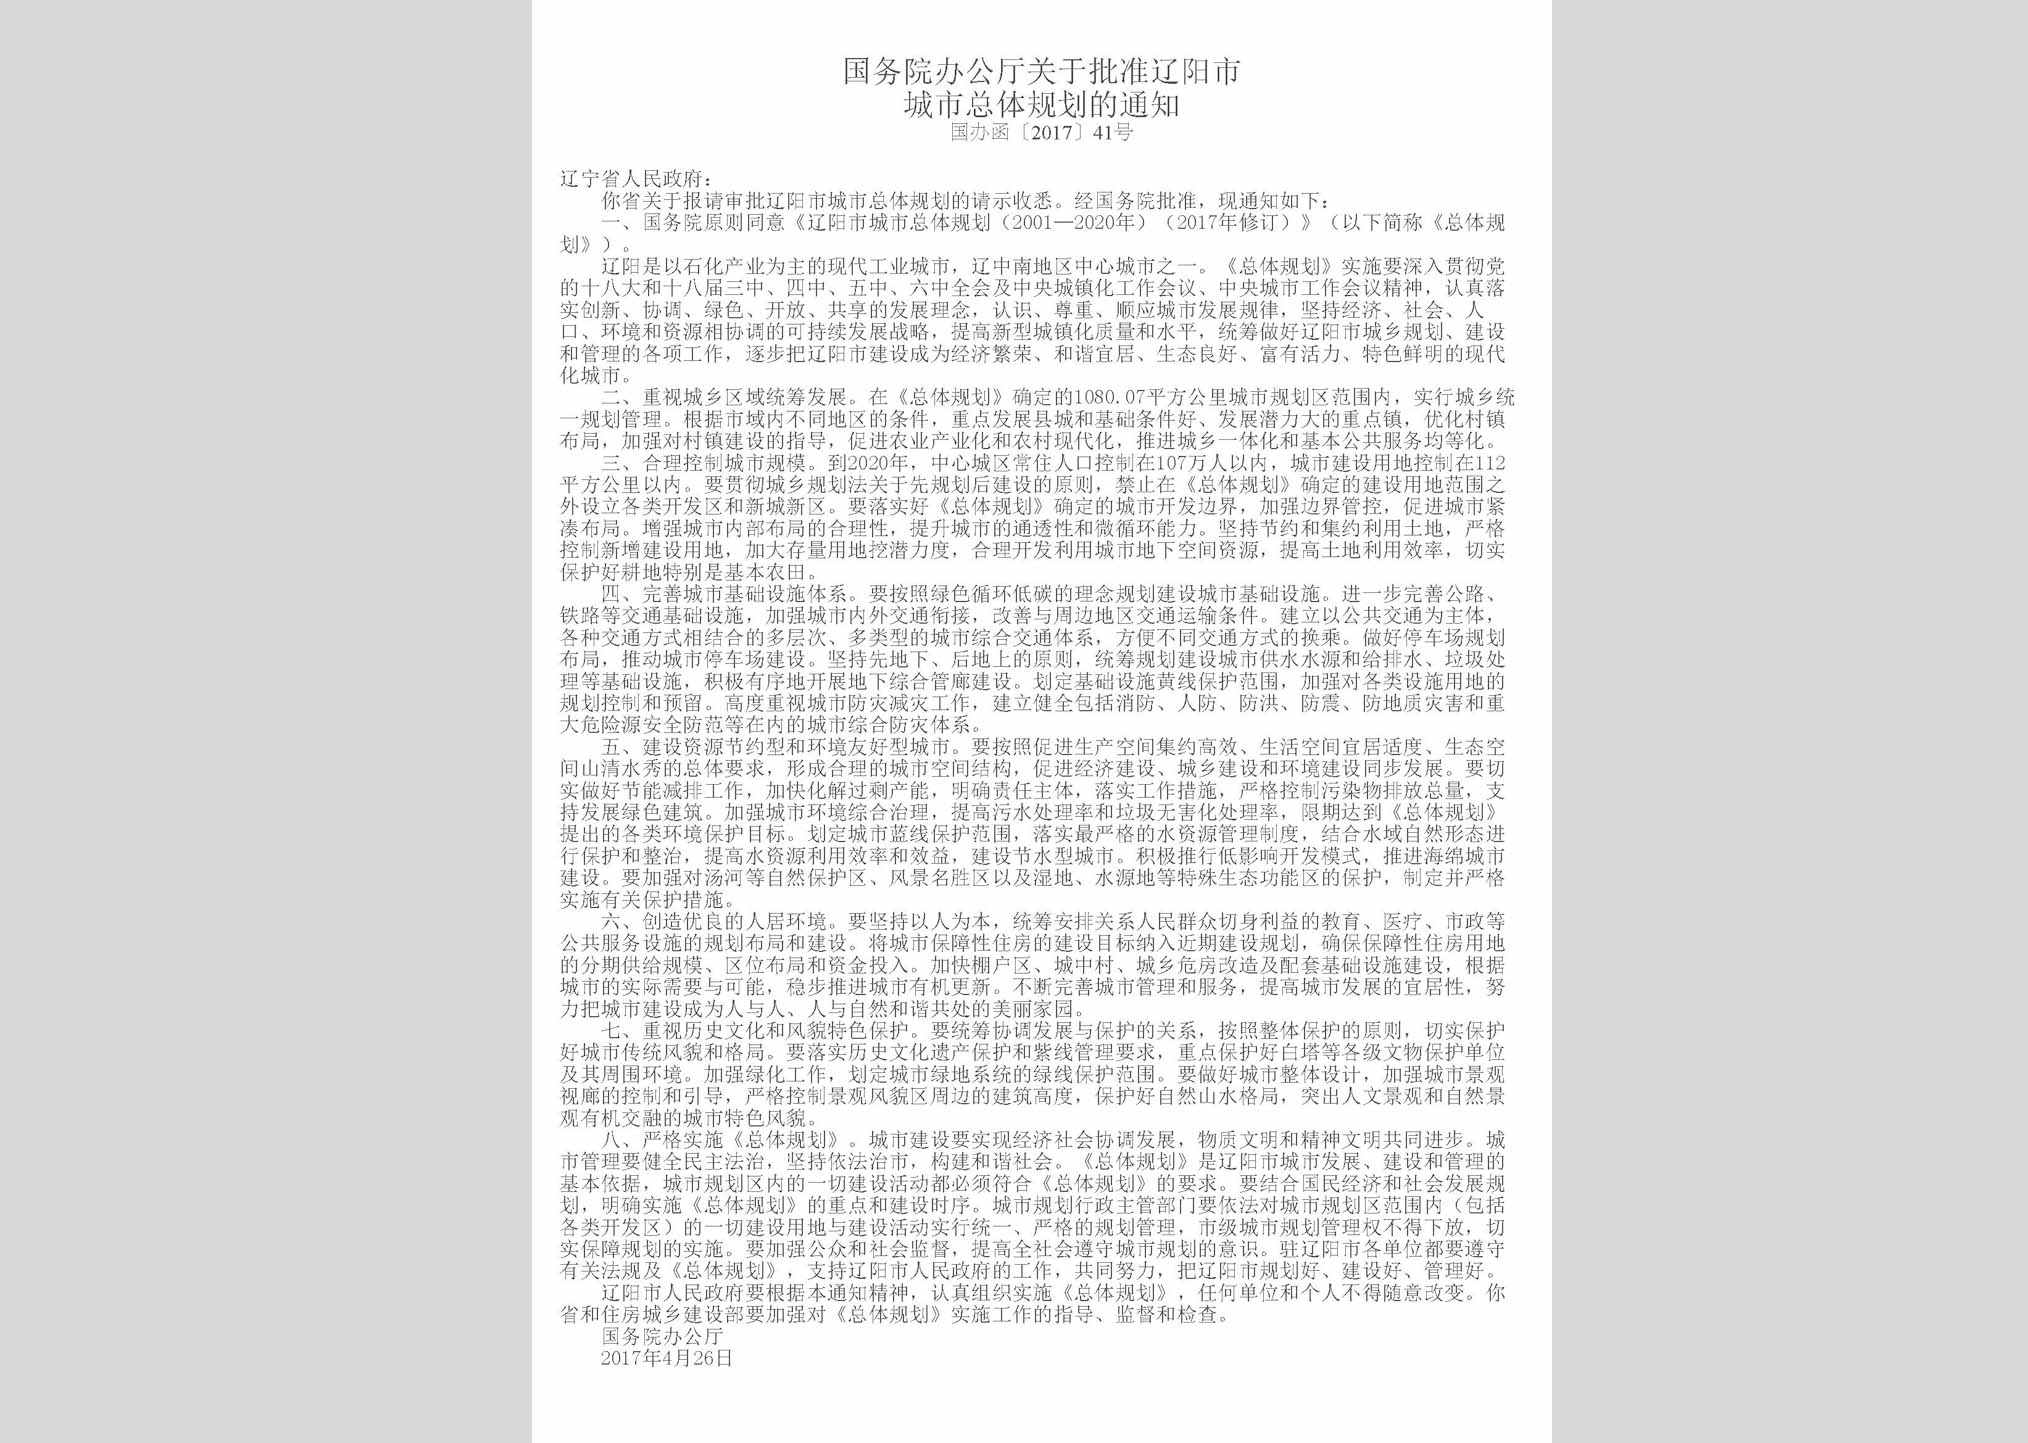 国办函[2017]41号：国务院办公厅关于批准辽阳市城市总体规划的通知